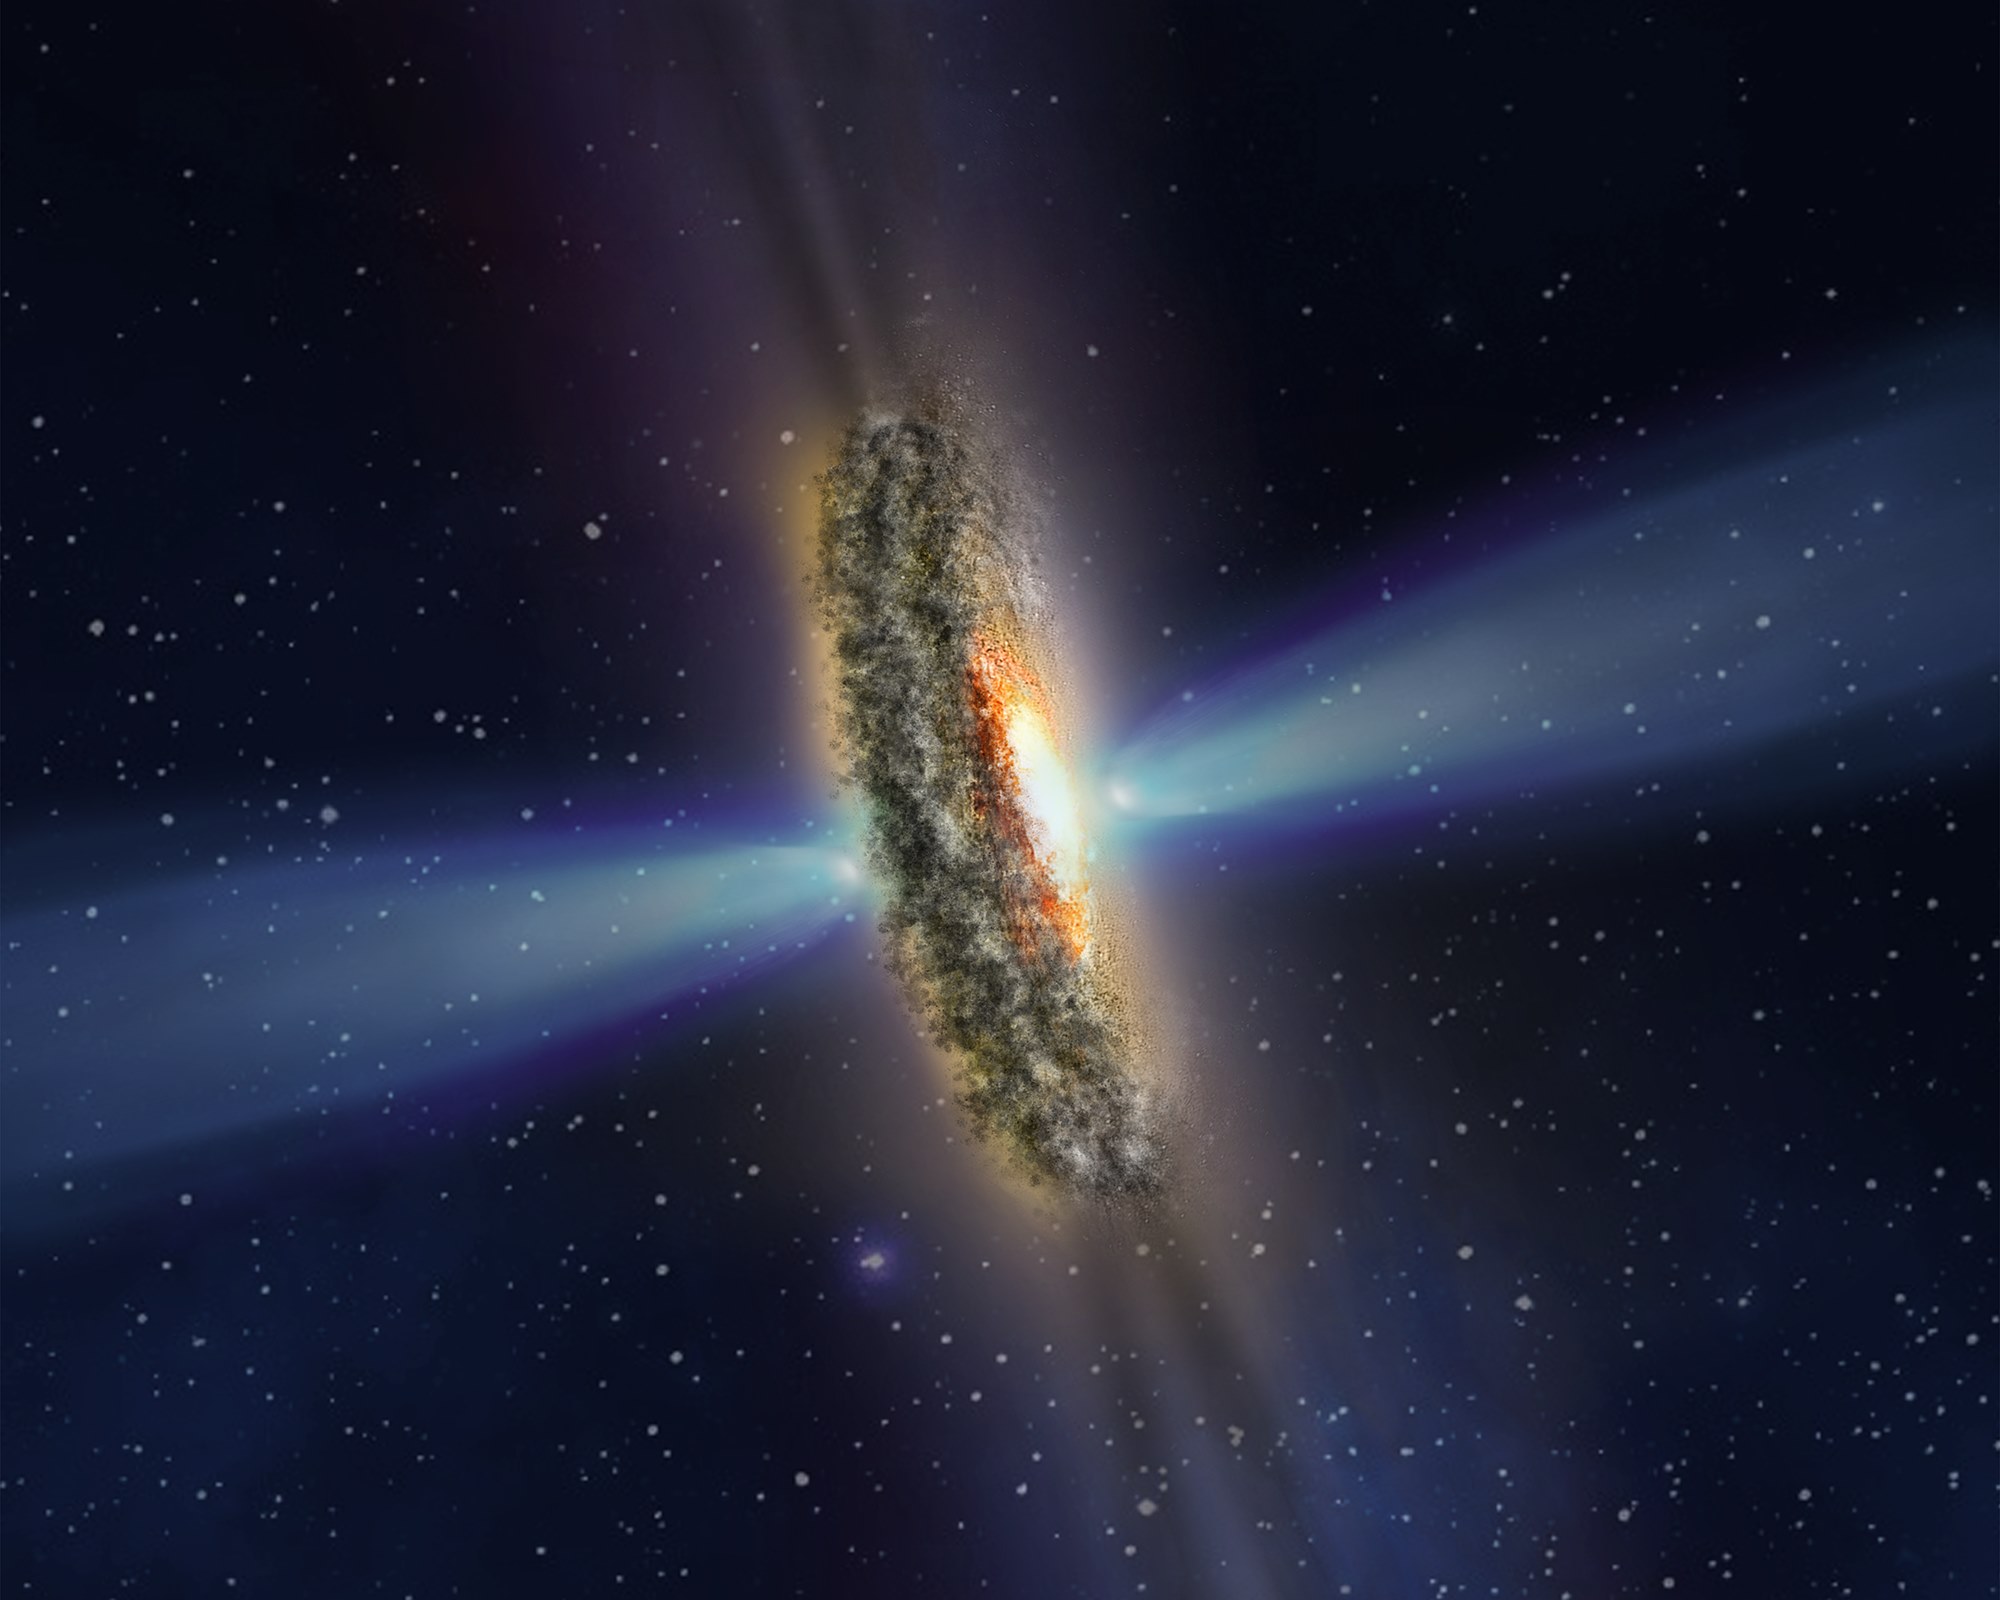 Hình minh họa này mô tả một lời giải thích cho các bóng tối và luồng sáng bí ẩn quan sát được, phát ra từ trung tâm sáng chói của thiên hà đang hoạt động IC 5063.